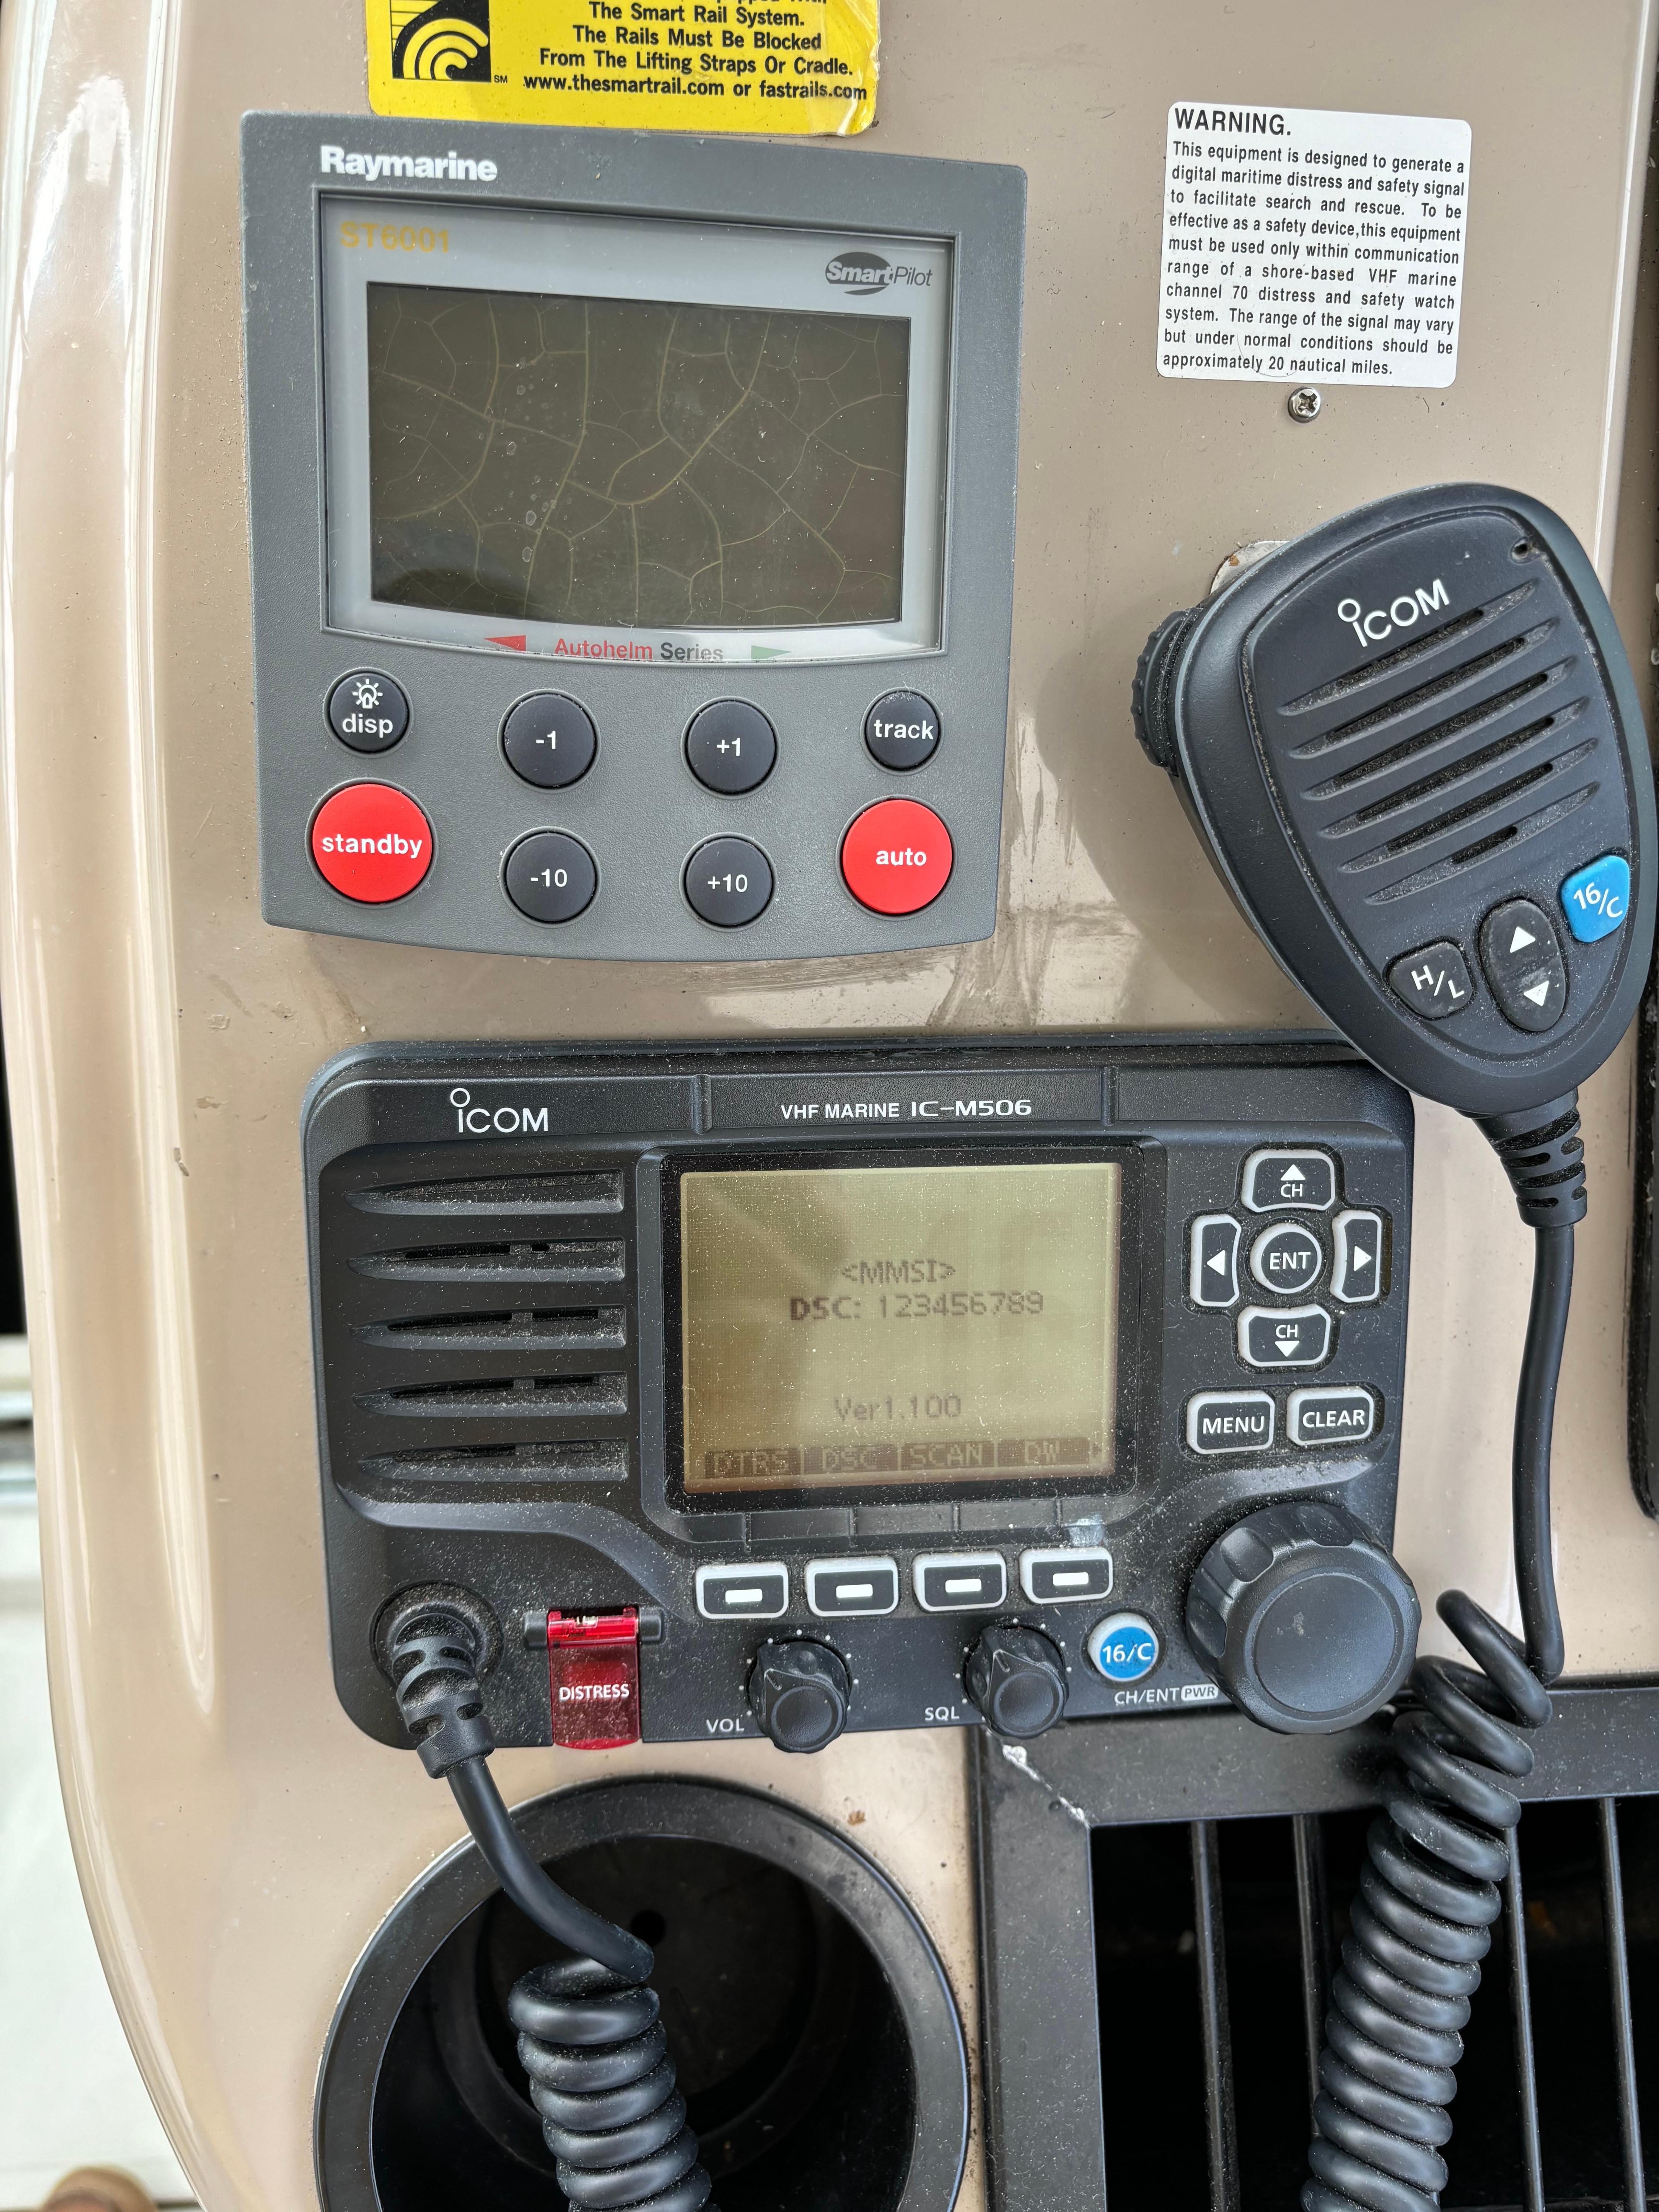 Autopilot and VHF